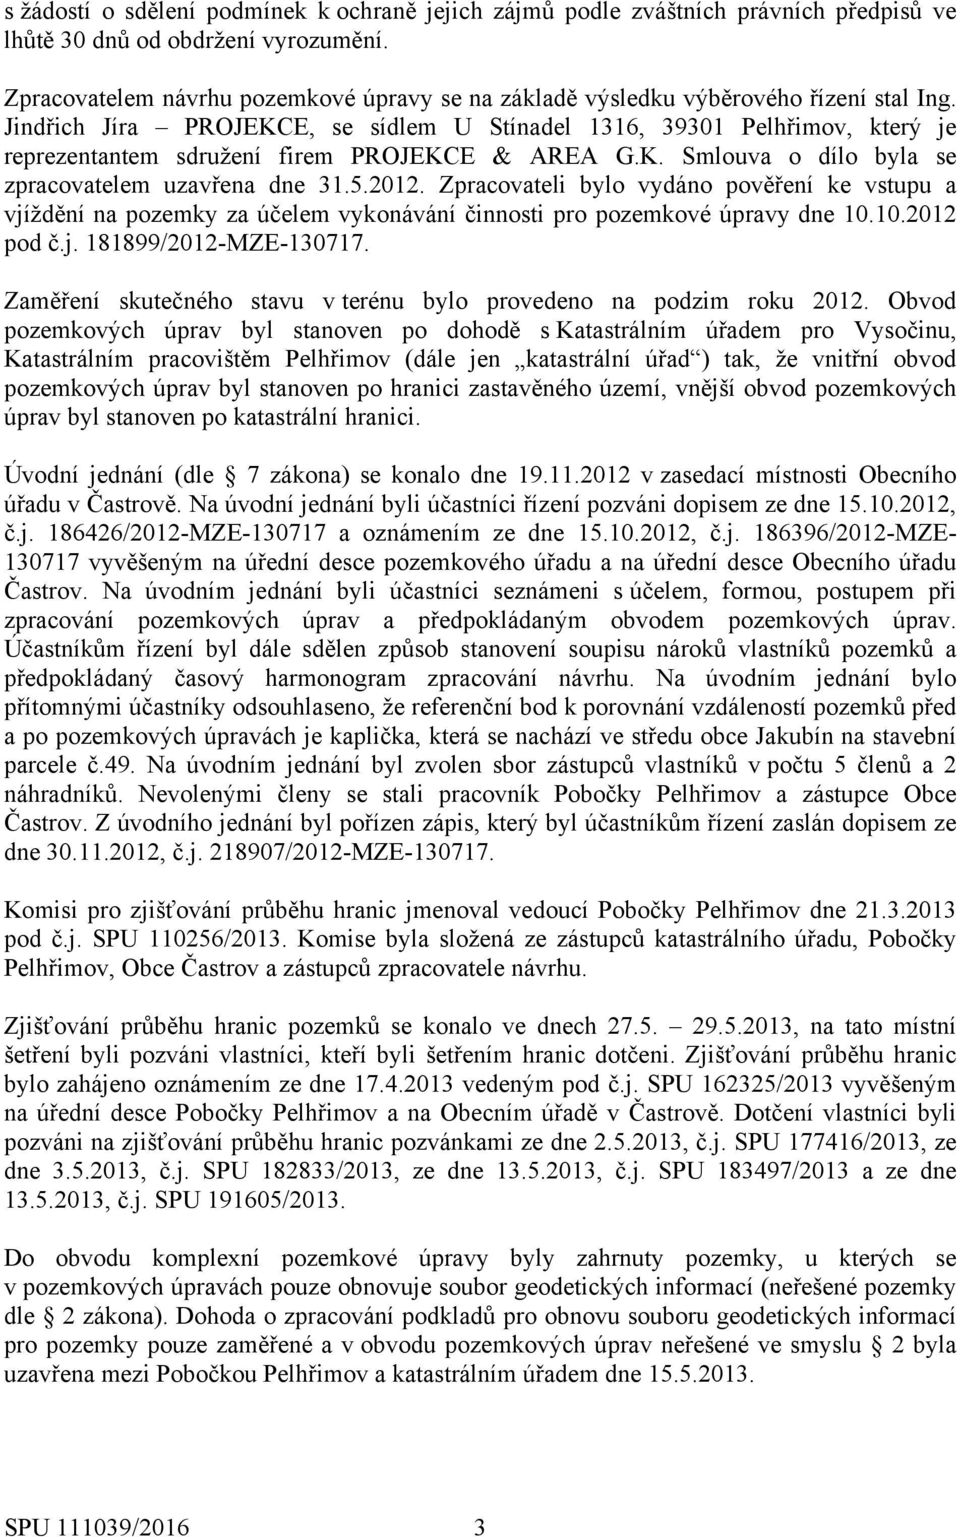 Jindřich Jíra PROJEKCE, se sídlem U Stínadel 1316, 39301 Pelhřimov, který je reprezentantem sdružení firem PROJEKCE & AREA G.K. Smlouva o dílo byla se zpracovatelem uzavřena dne 31.5.2012.